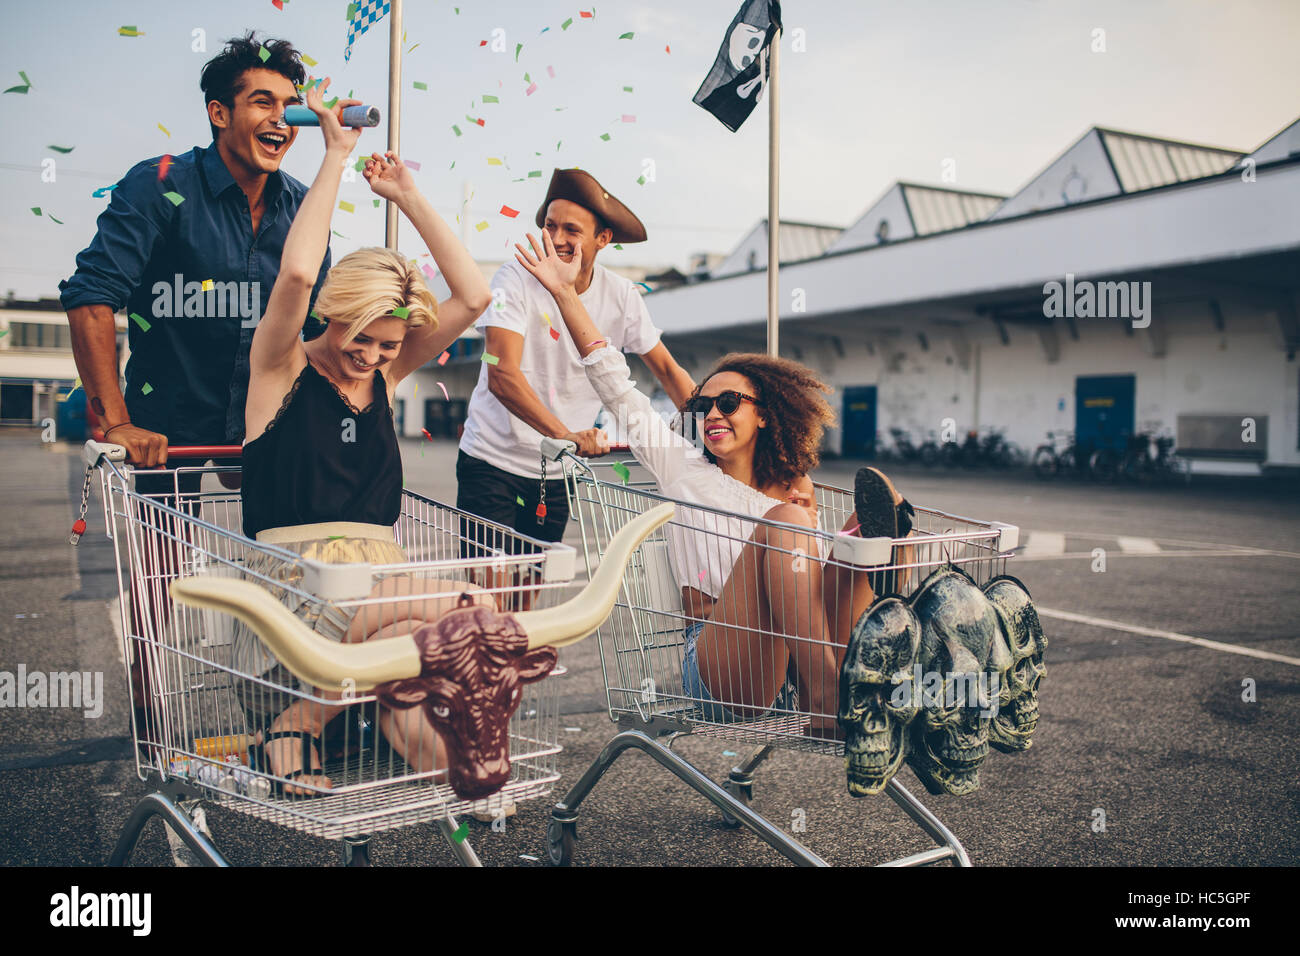 Course jeunes multiethnique avec panier. Jeunes amis s'amusant sur un des chariots et de confettis. Banque D'Images